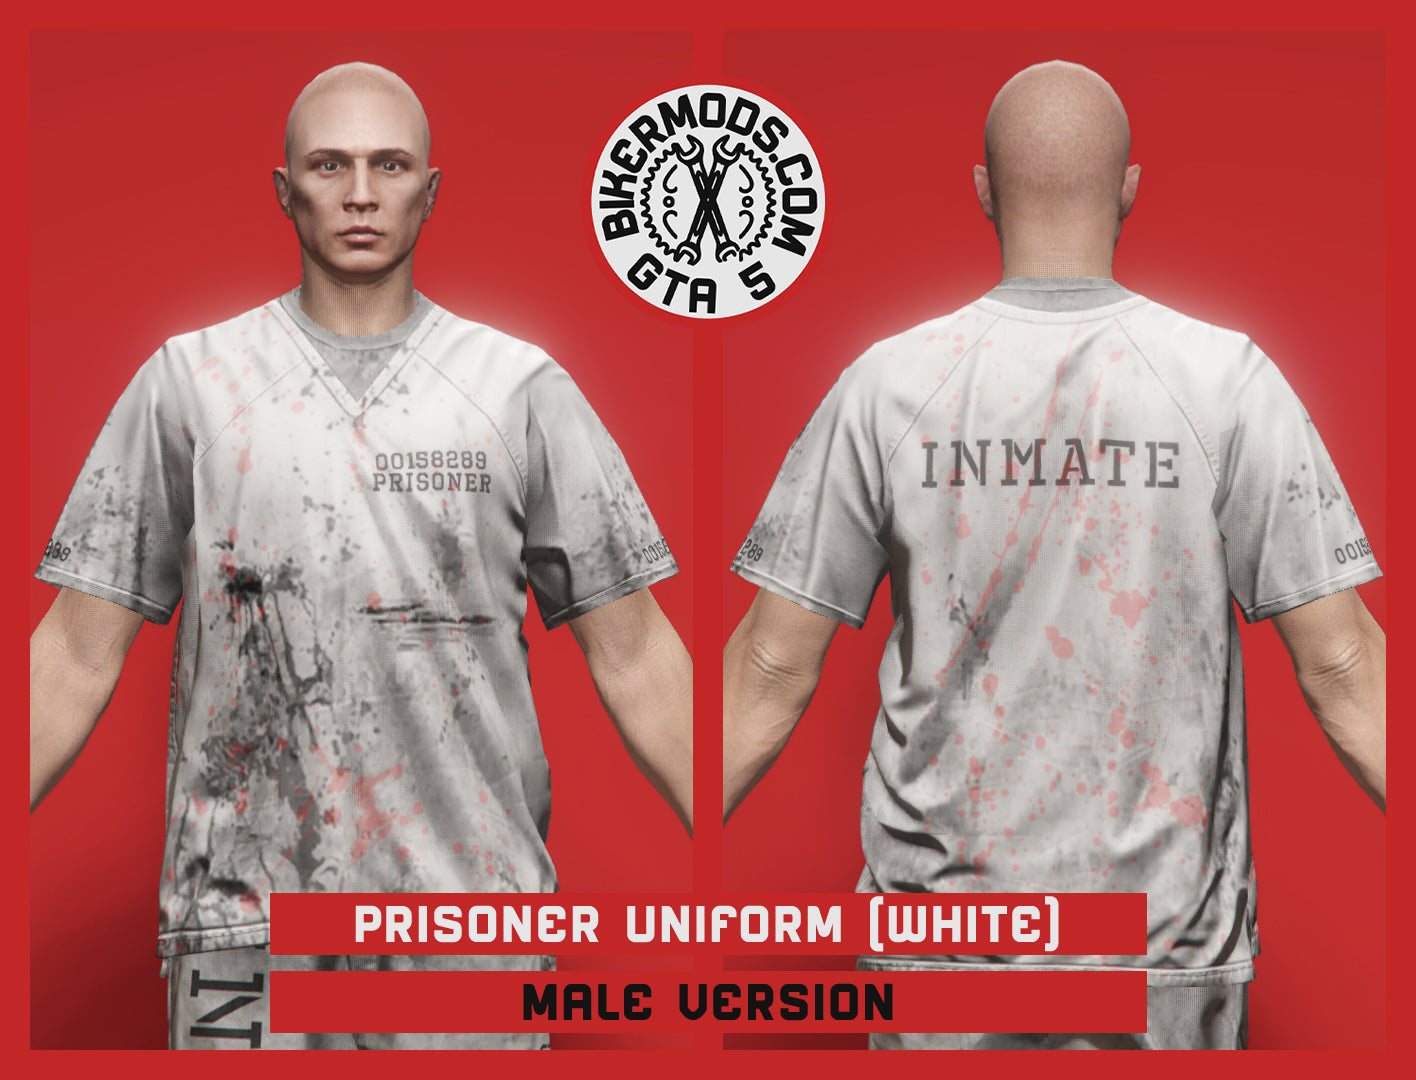 Prisoner Uniform (White) Worn Version